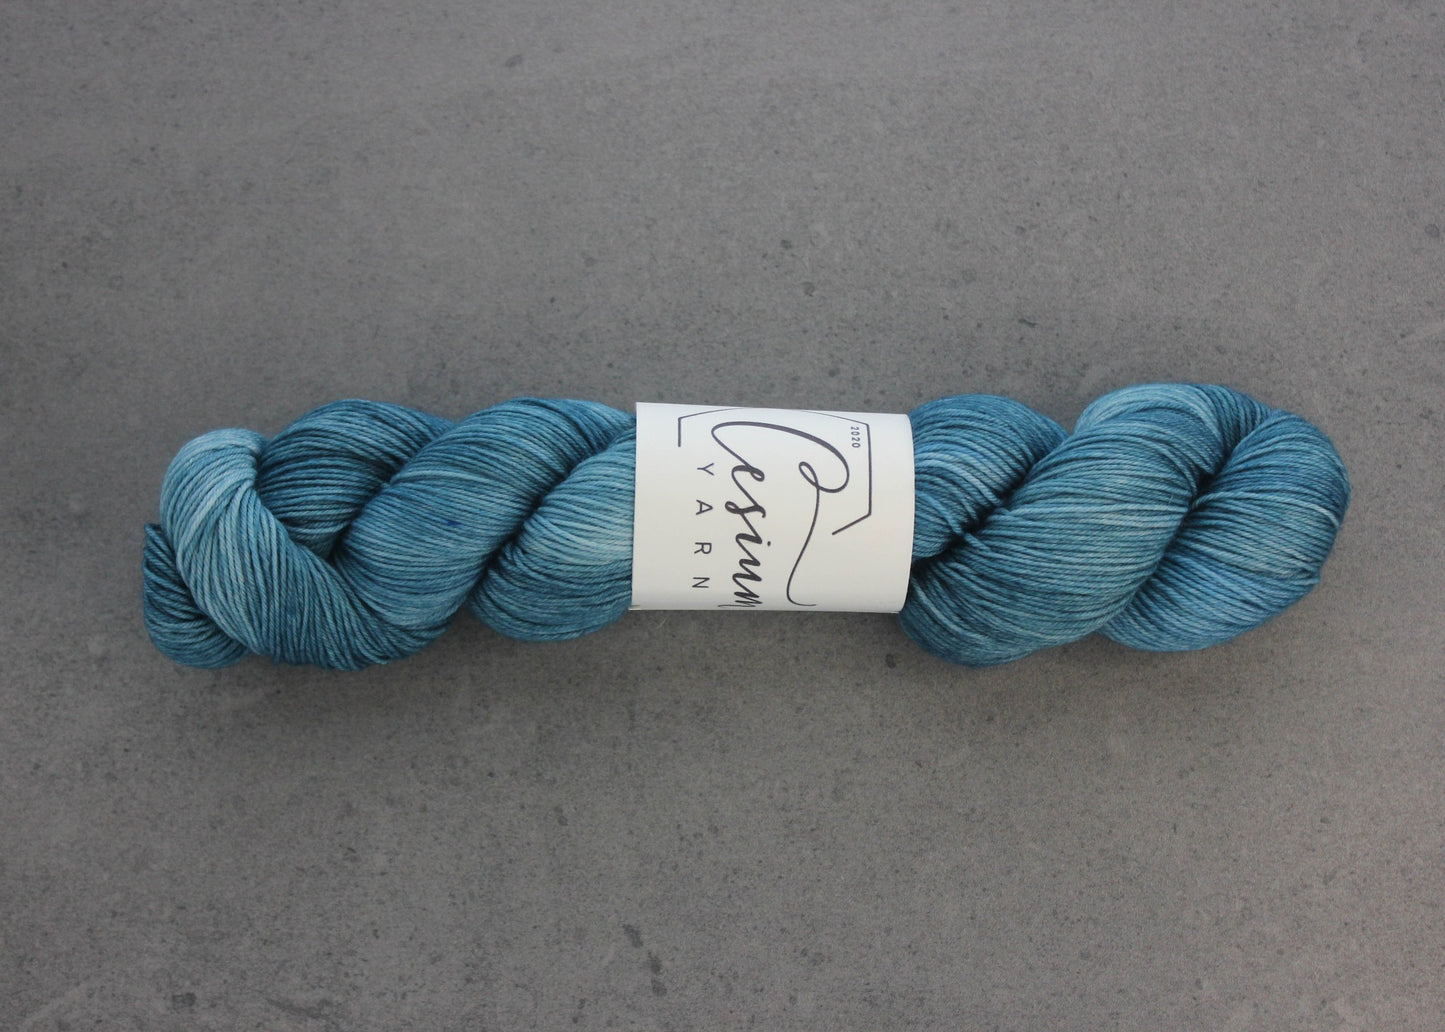 A skein of deep aqua-blue hand-dyed wool yarn.